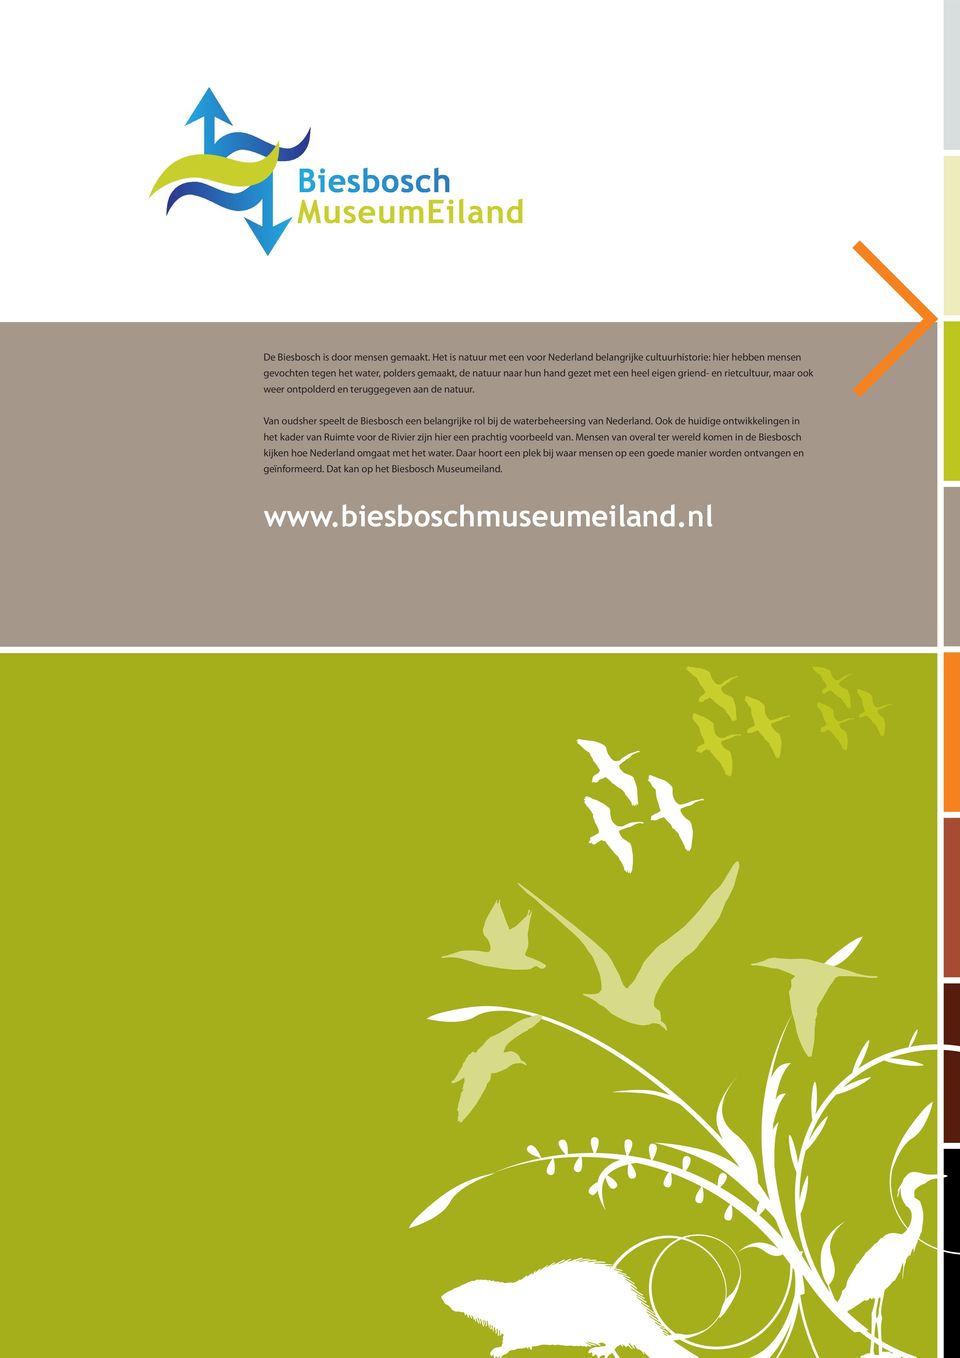 rietcultuur, maar ook weer ontpolderd en teruggegeven aan de natuur. Van oudsher speelt de Biesbosch een belangrijke rol bij de waterbeheersing van Nederland.